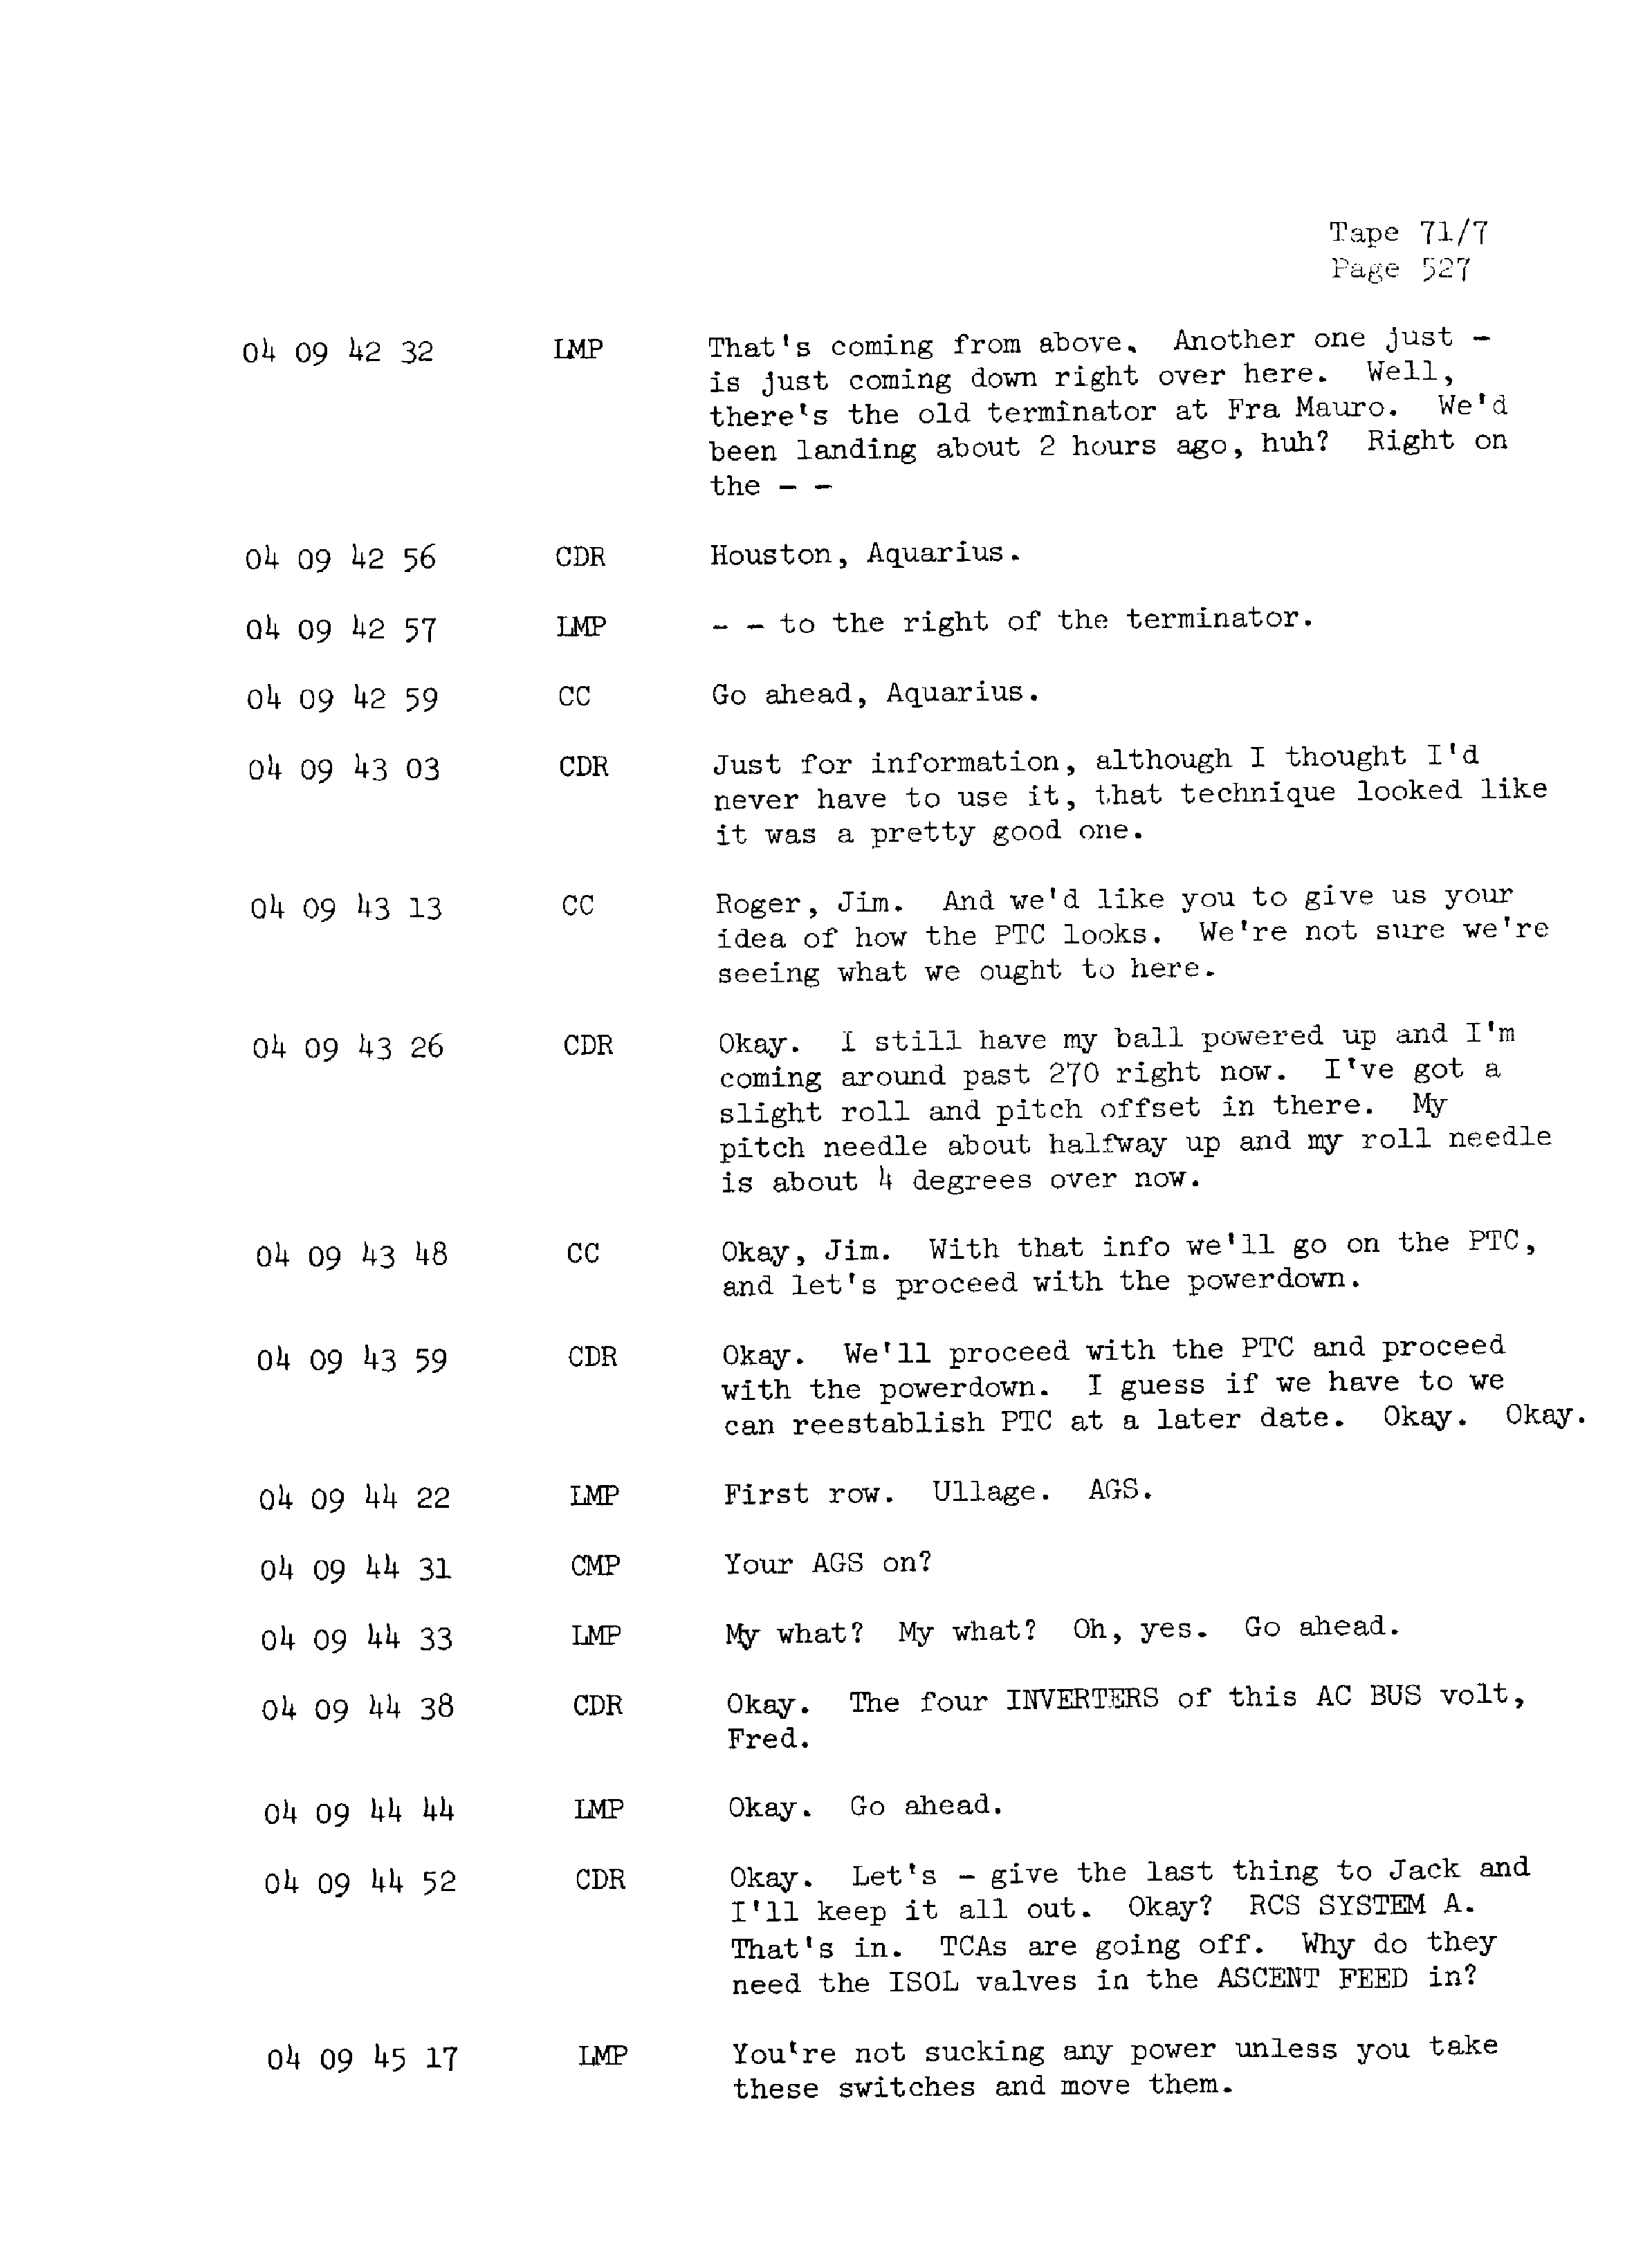 Page 534 of Apollo 13’s original transcript